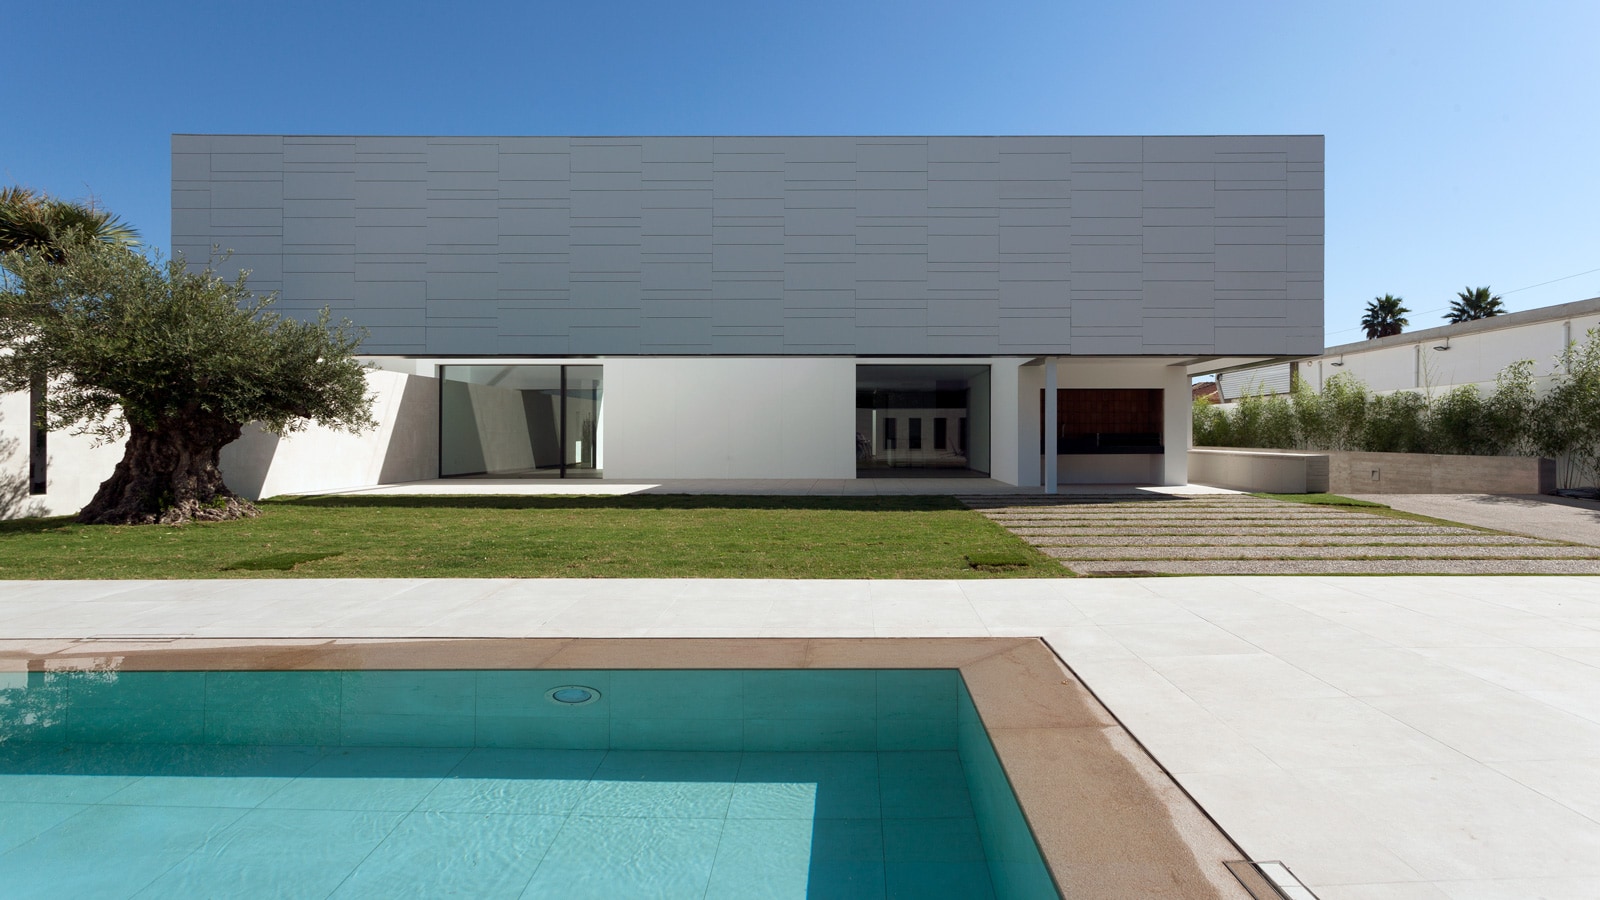 Avec les collections de Porcelanosa, Santatecla Arquitectos préserve la pureté géométrique de cette maison d'Alicante